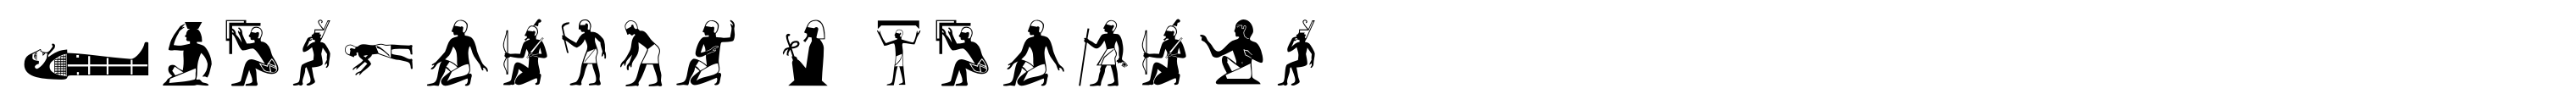 Hieroglyph A Regular